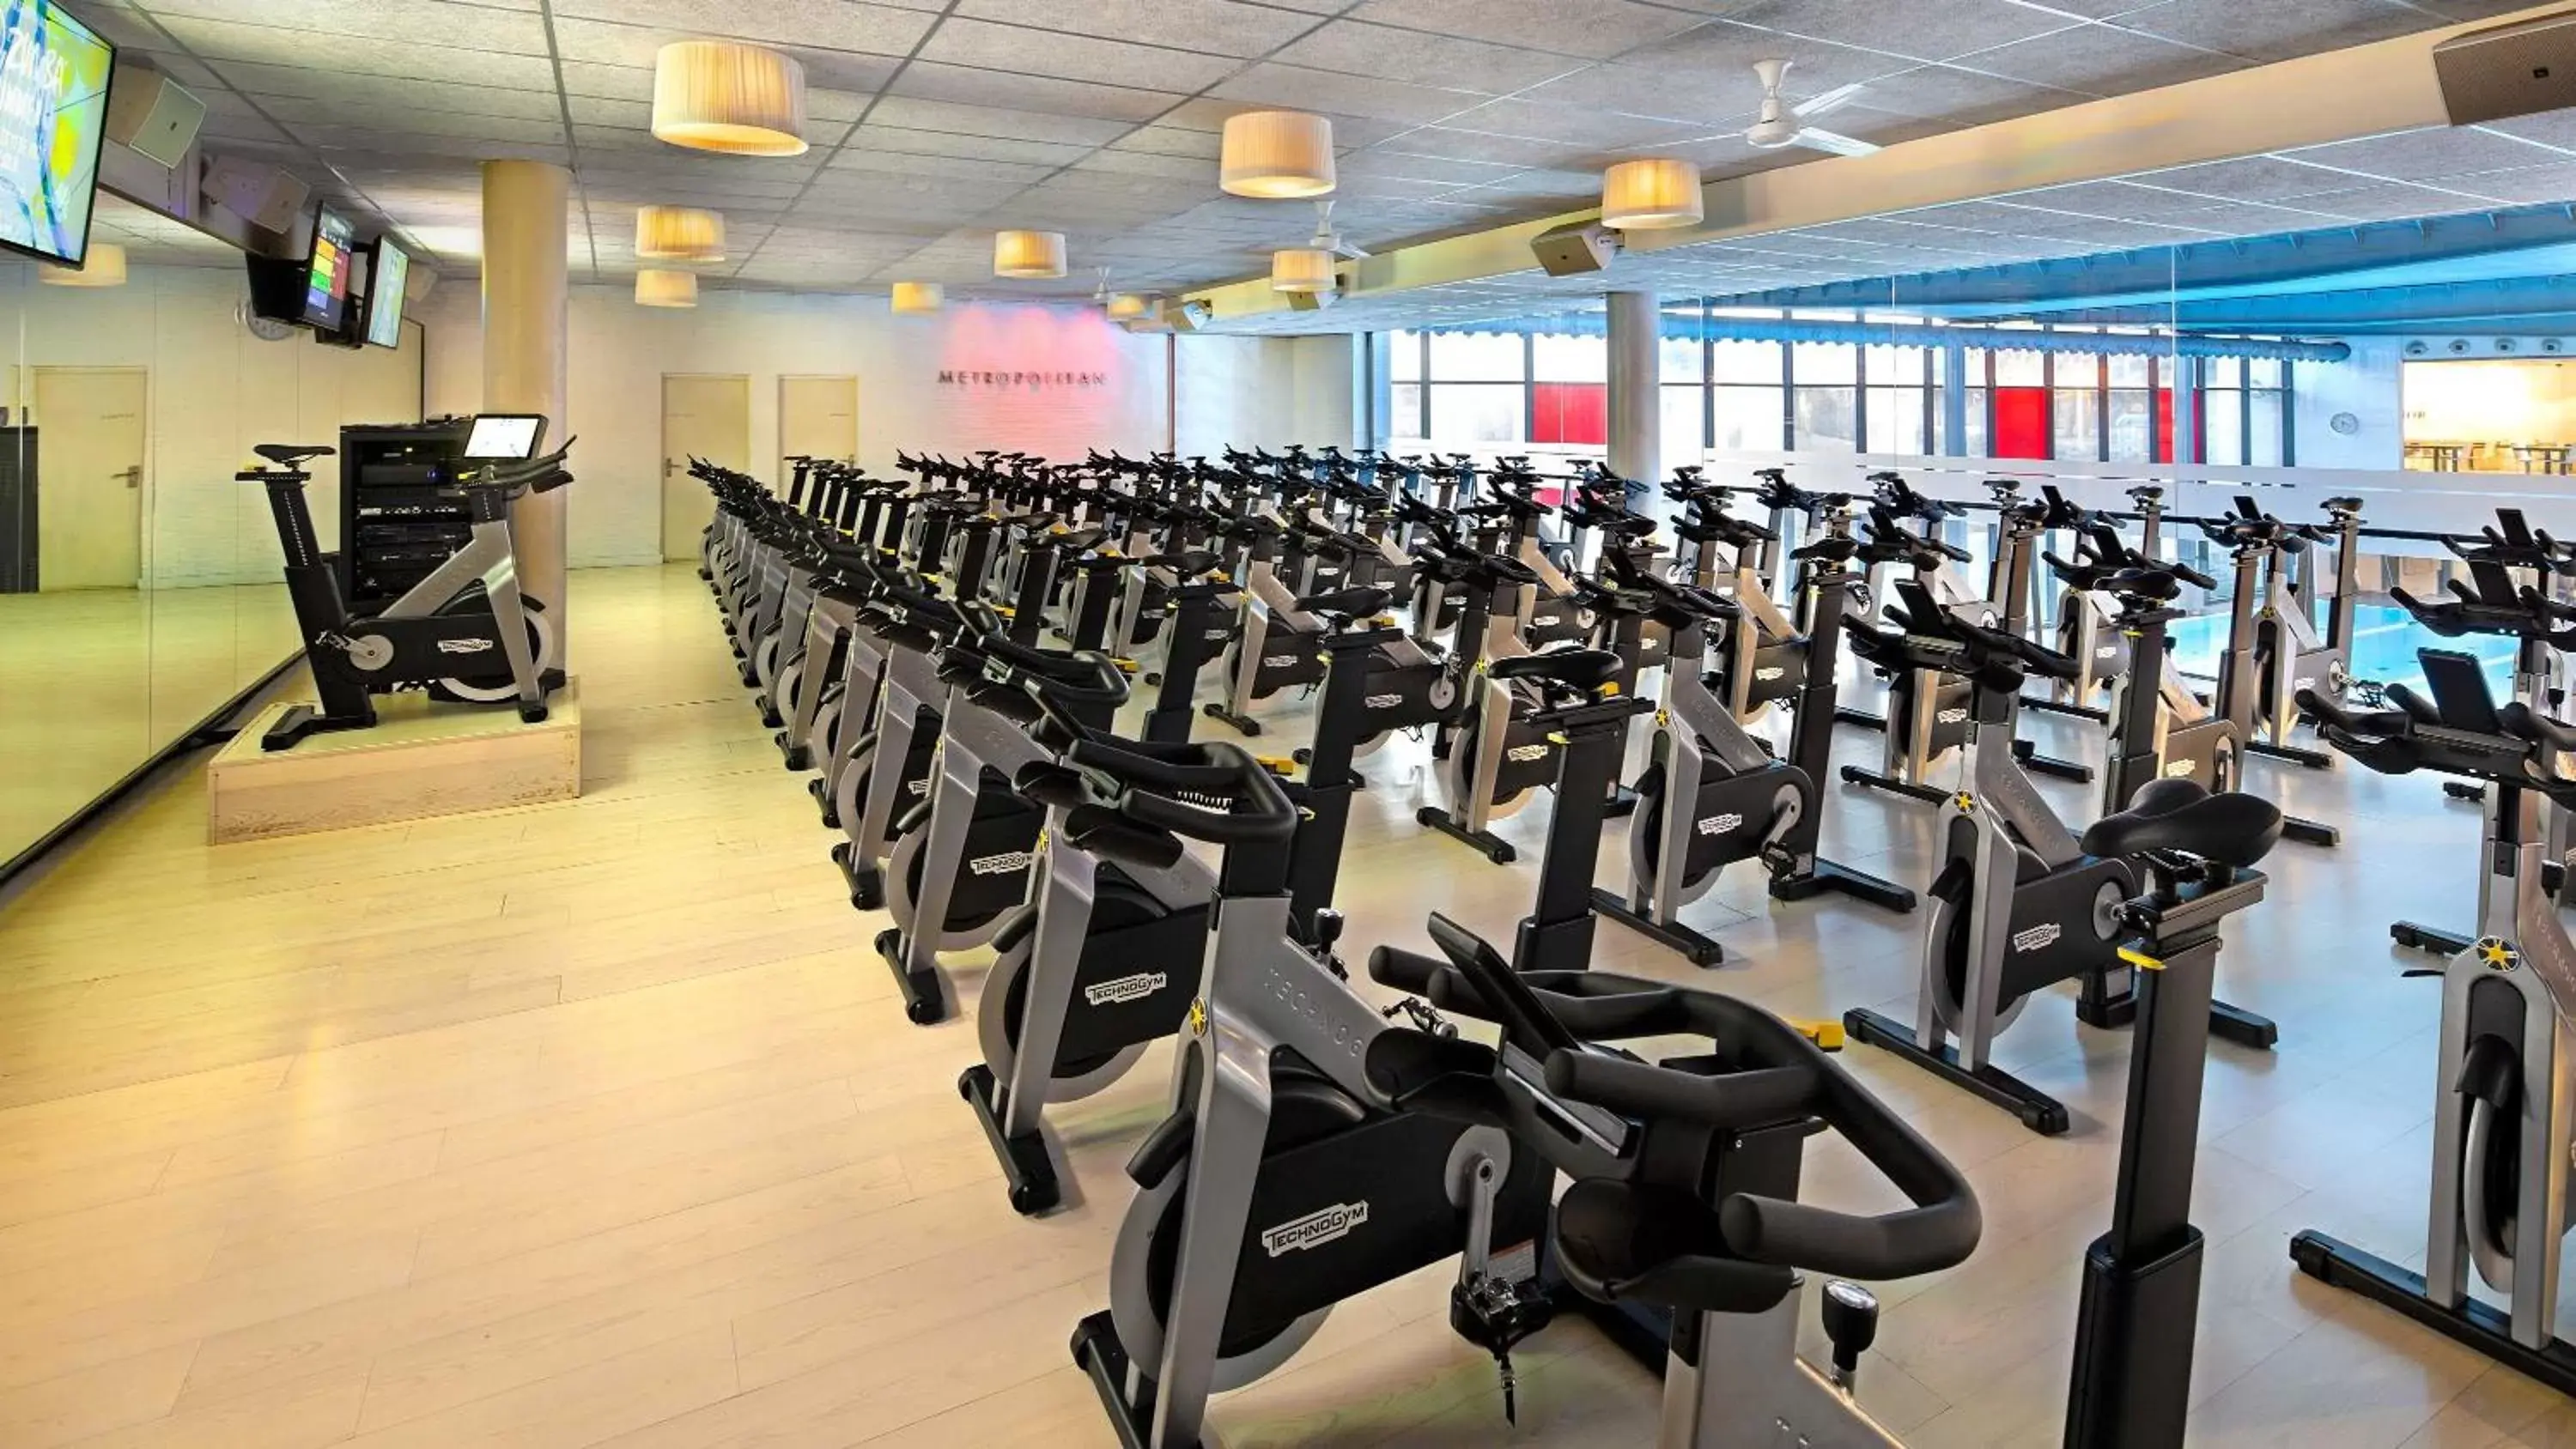 Fitness centre/facilities, Fitness Center/Facilities in Hyatt Regency Barcelona Tower